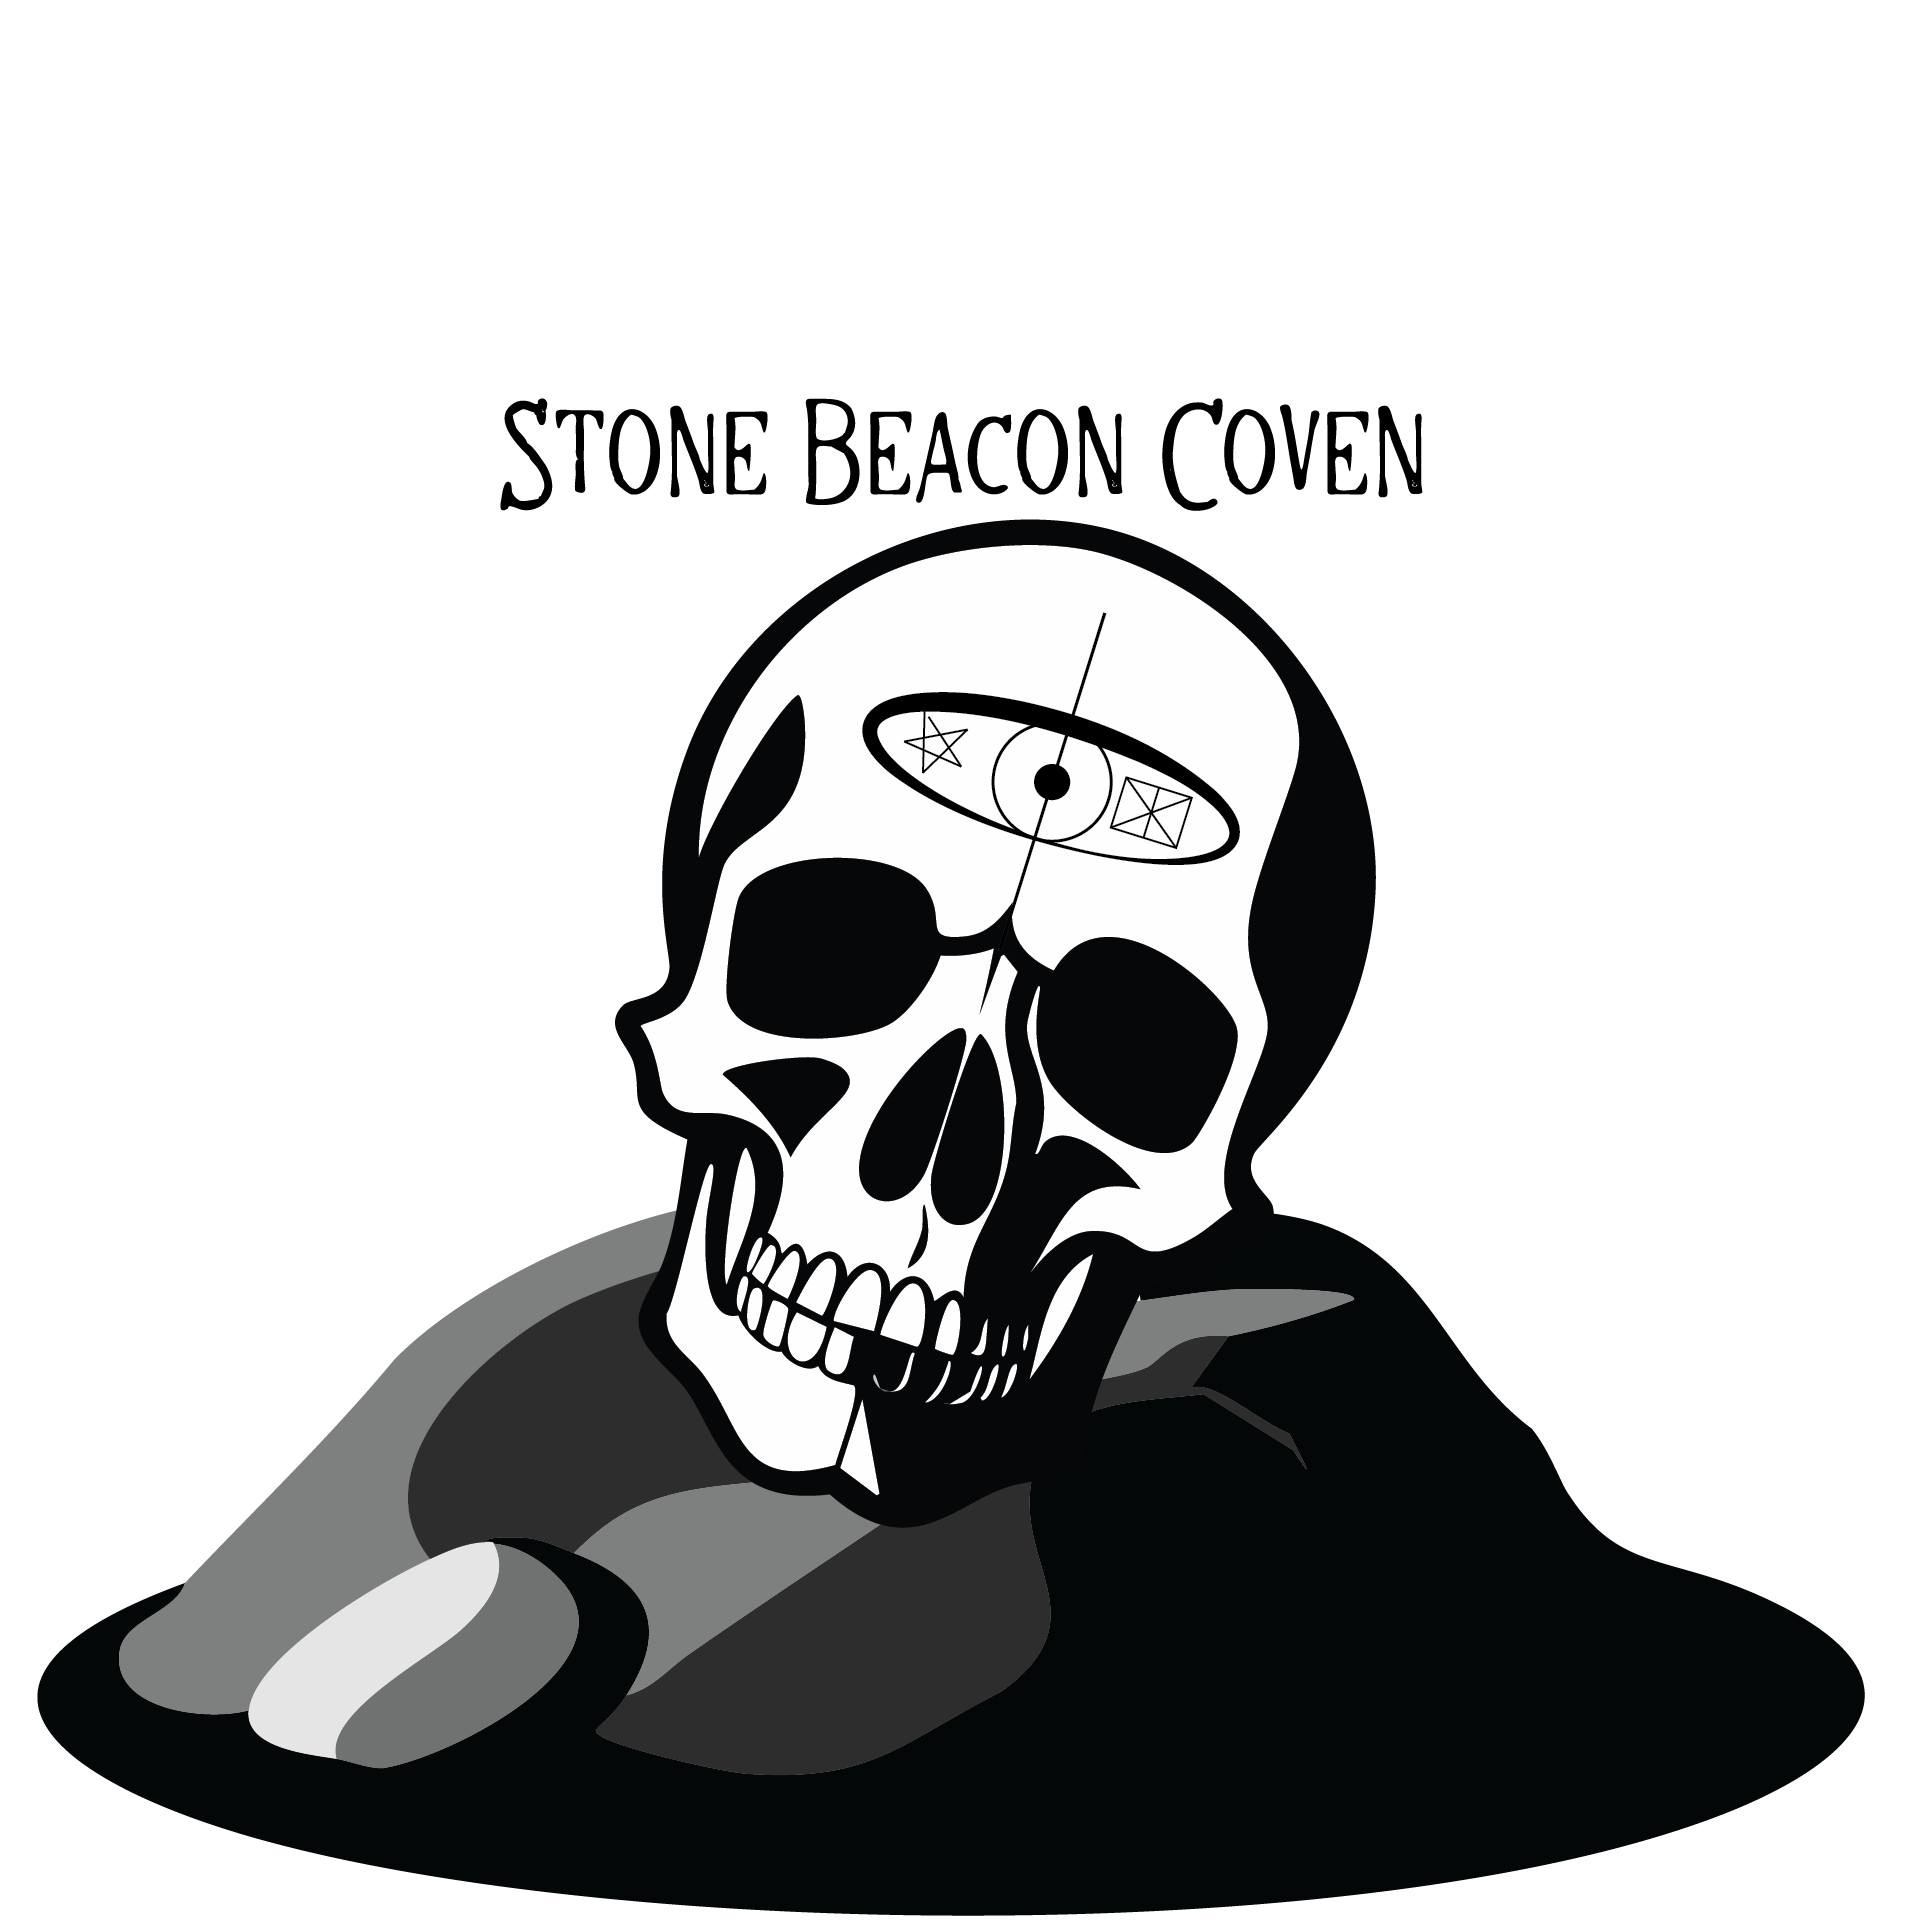 StoneBeacon Coven